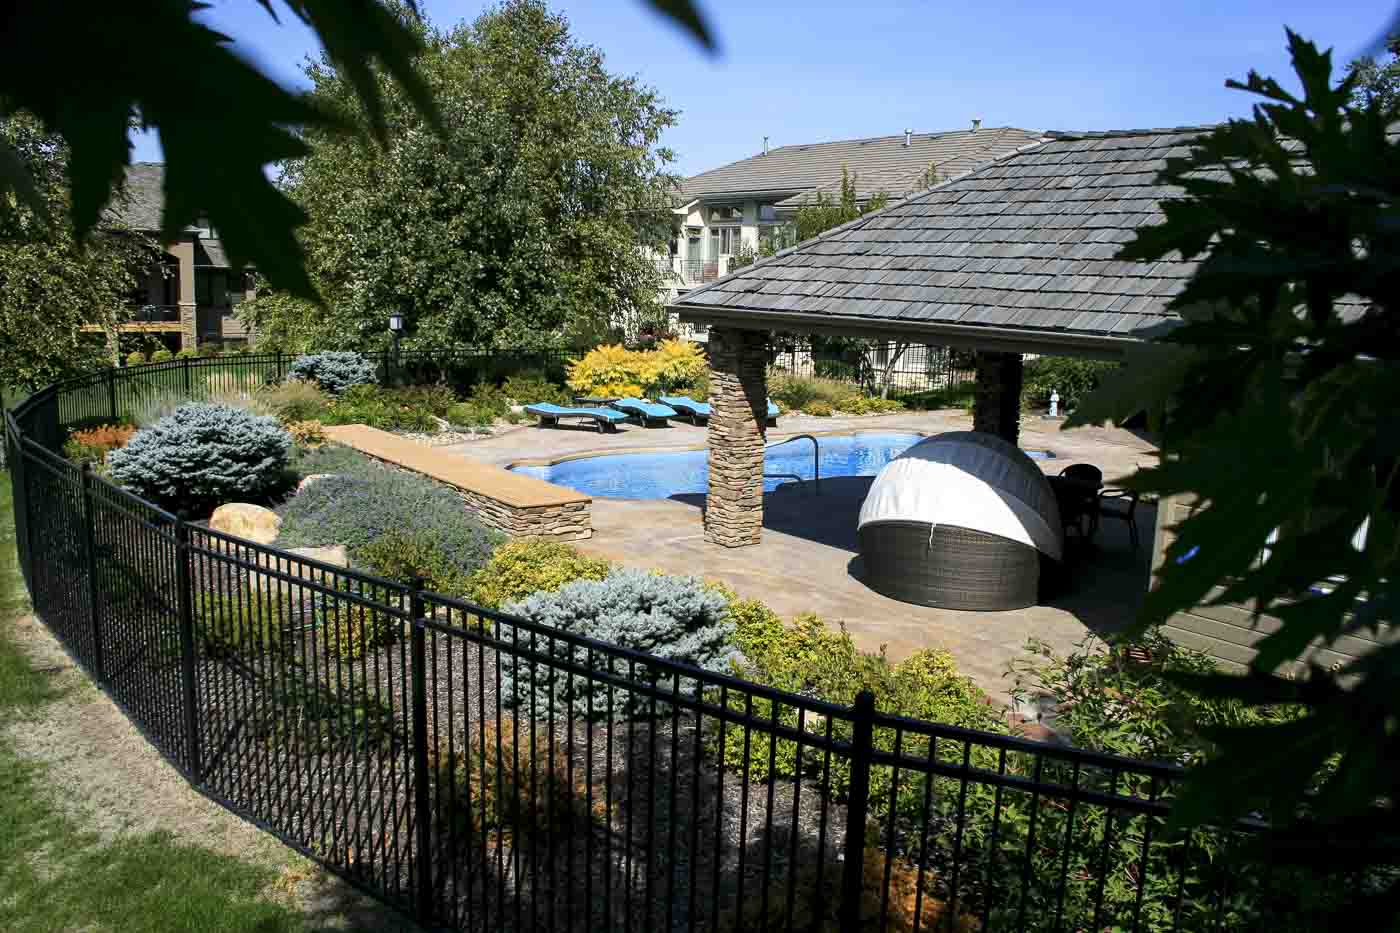 2010 Aquatech fiberglass pool